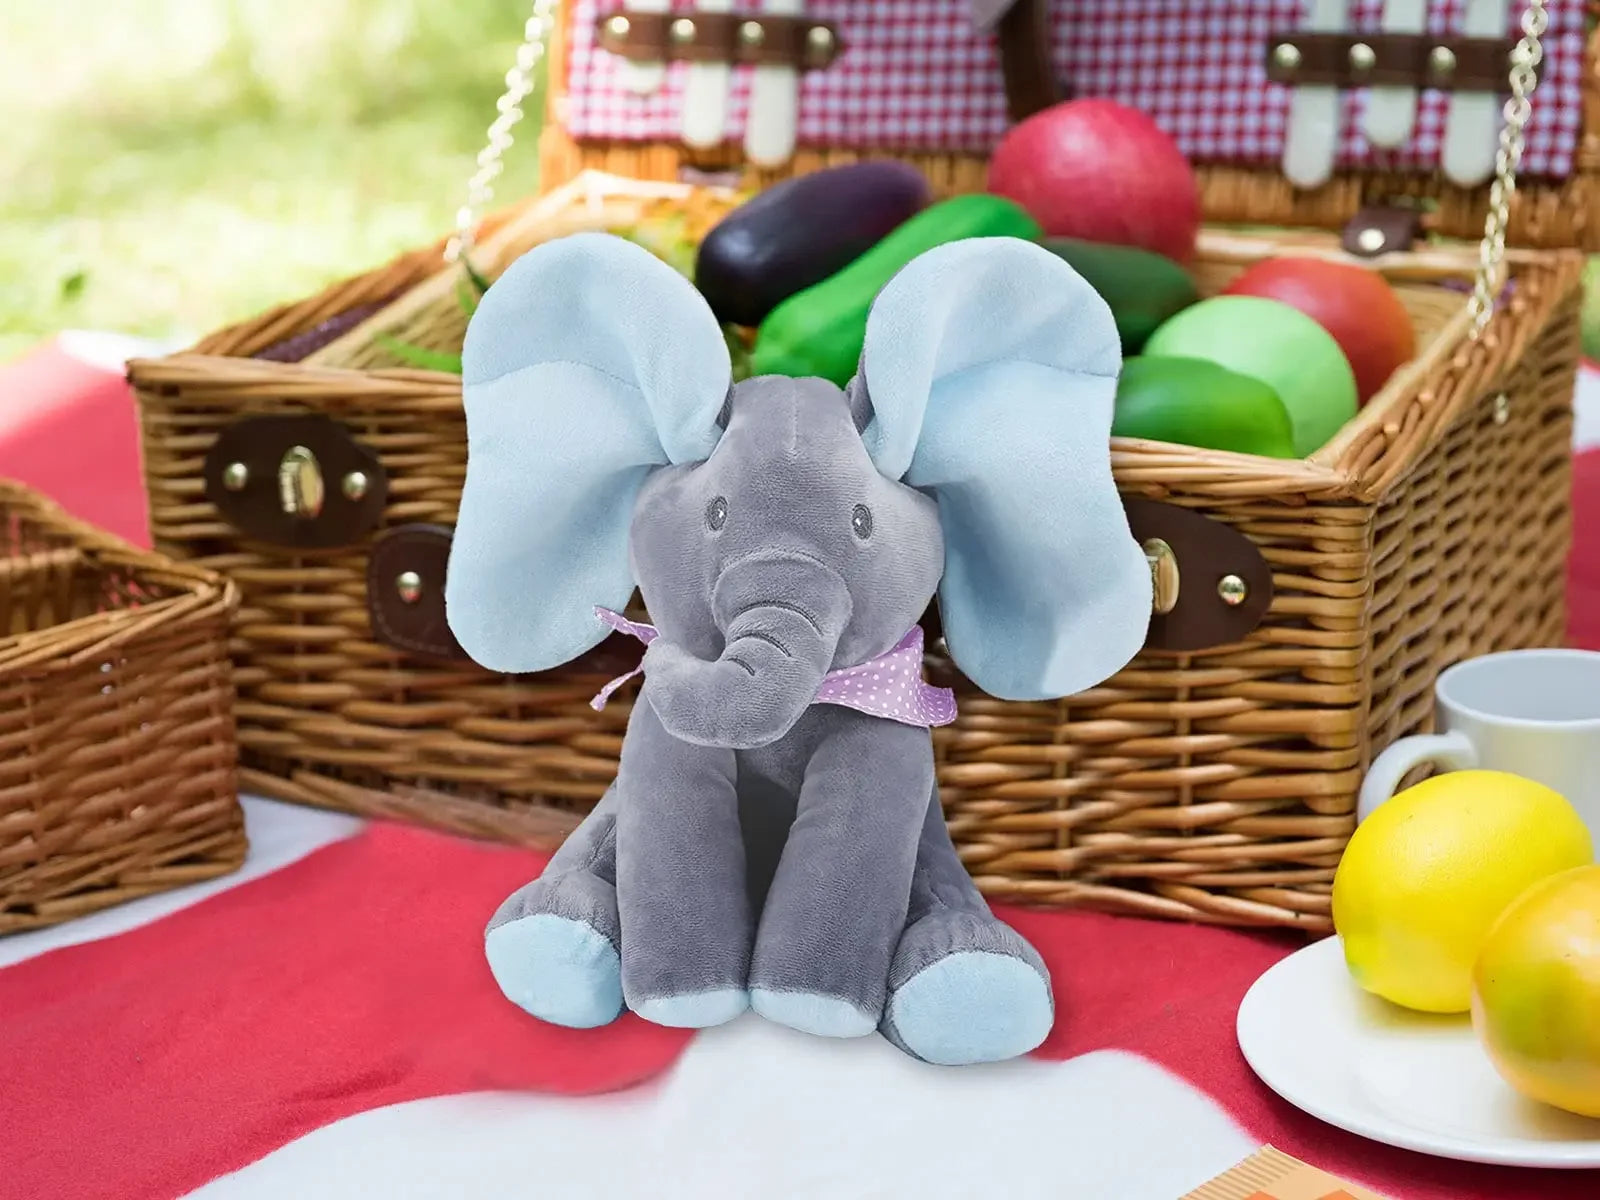 Un éléphant en peluche BABY-PREMA avec de grandes oreilles assis devant un panier de pique-nique en osier rempli d'œufs en plastique colorés, suggérant une célébration de Pâques ludique en plein air pour les bébés.